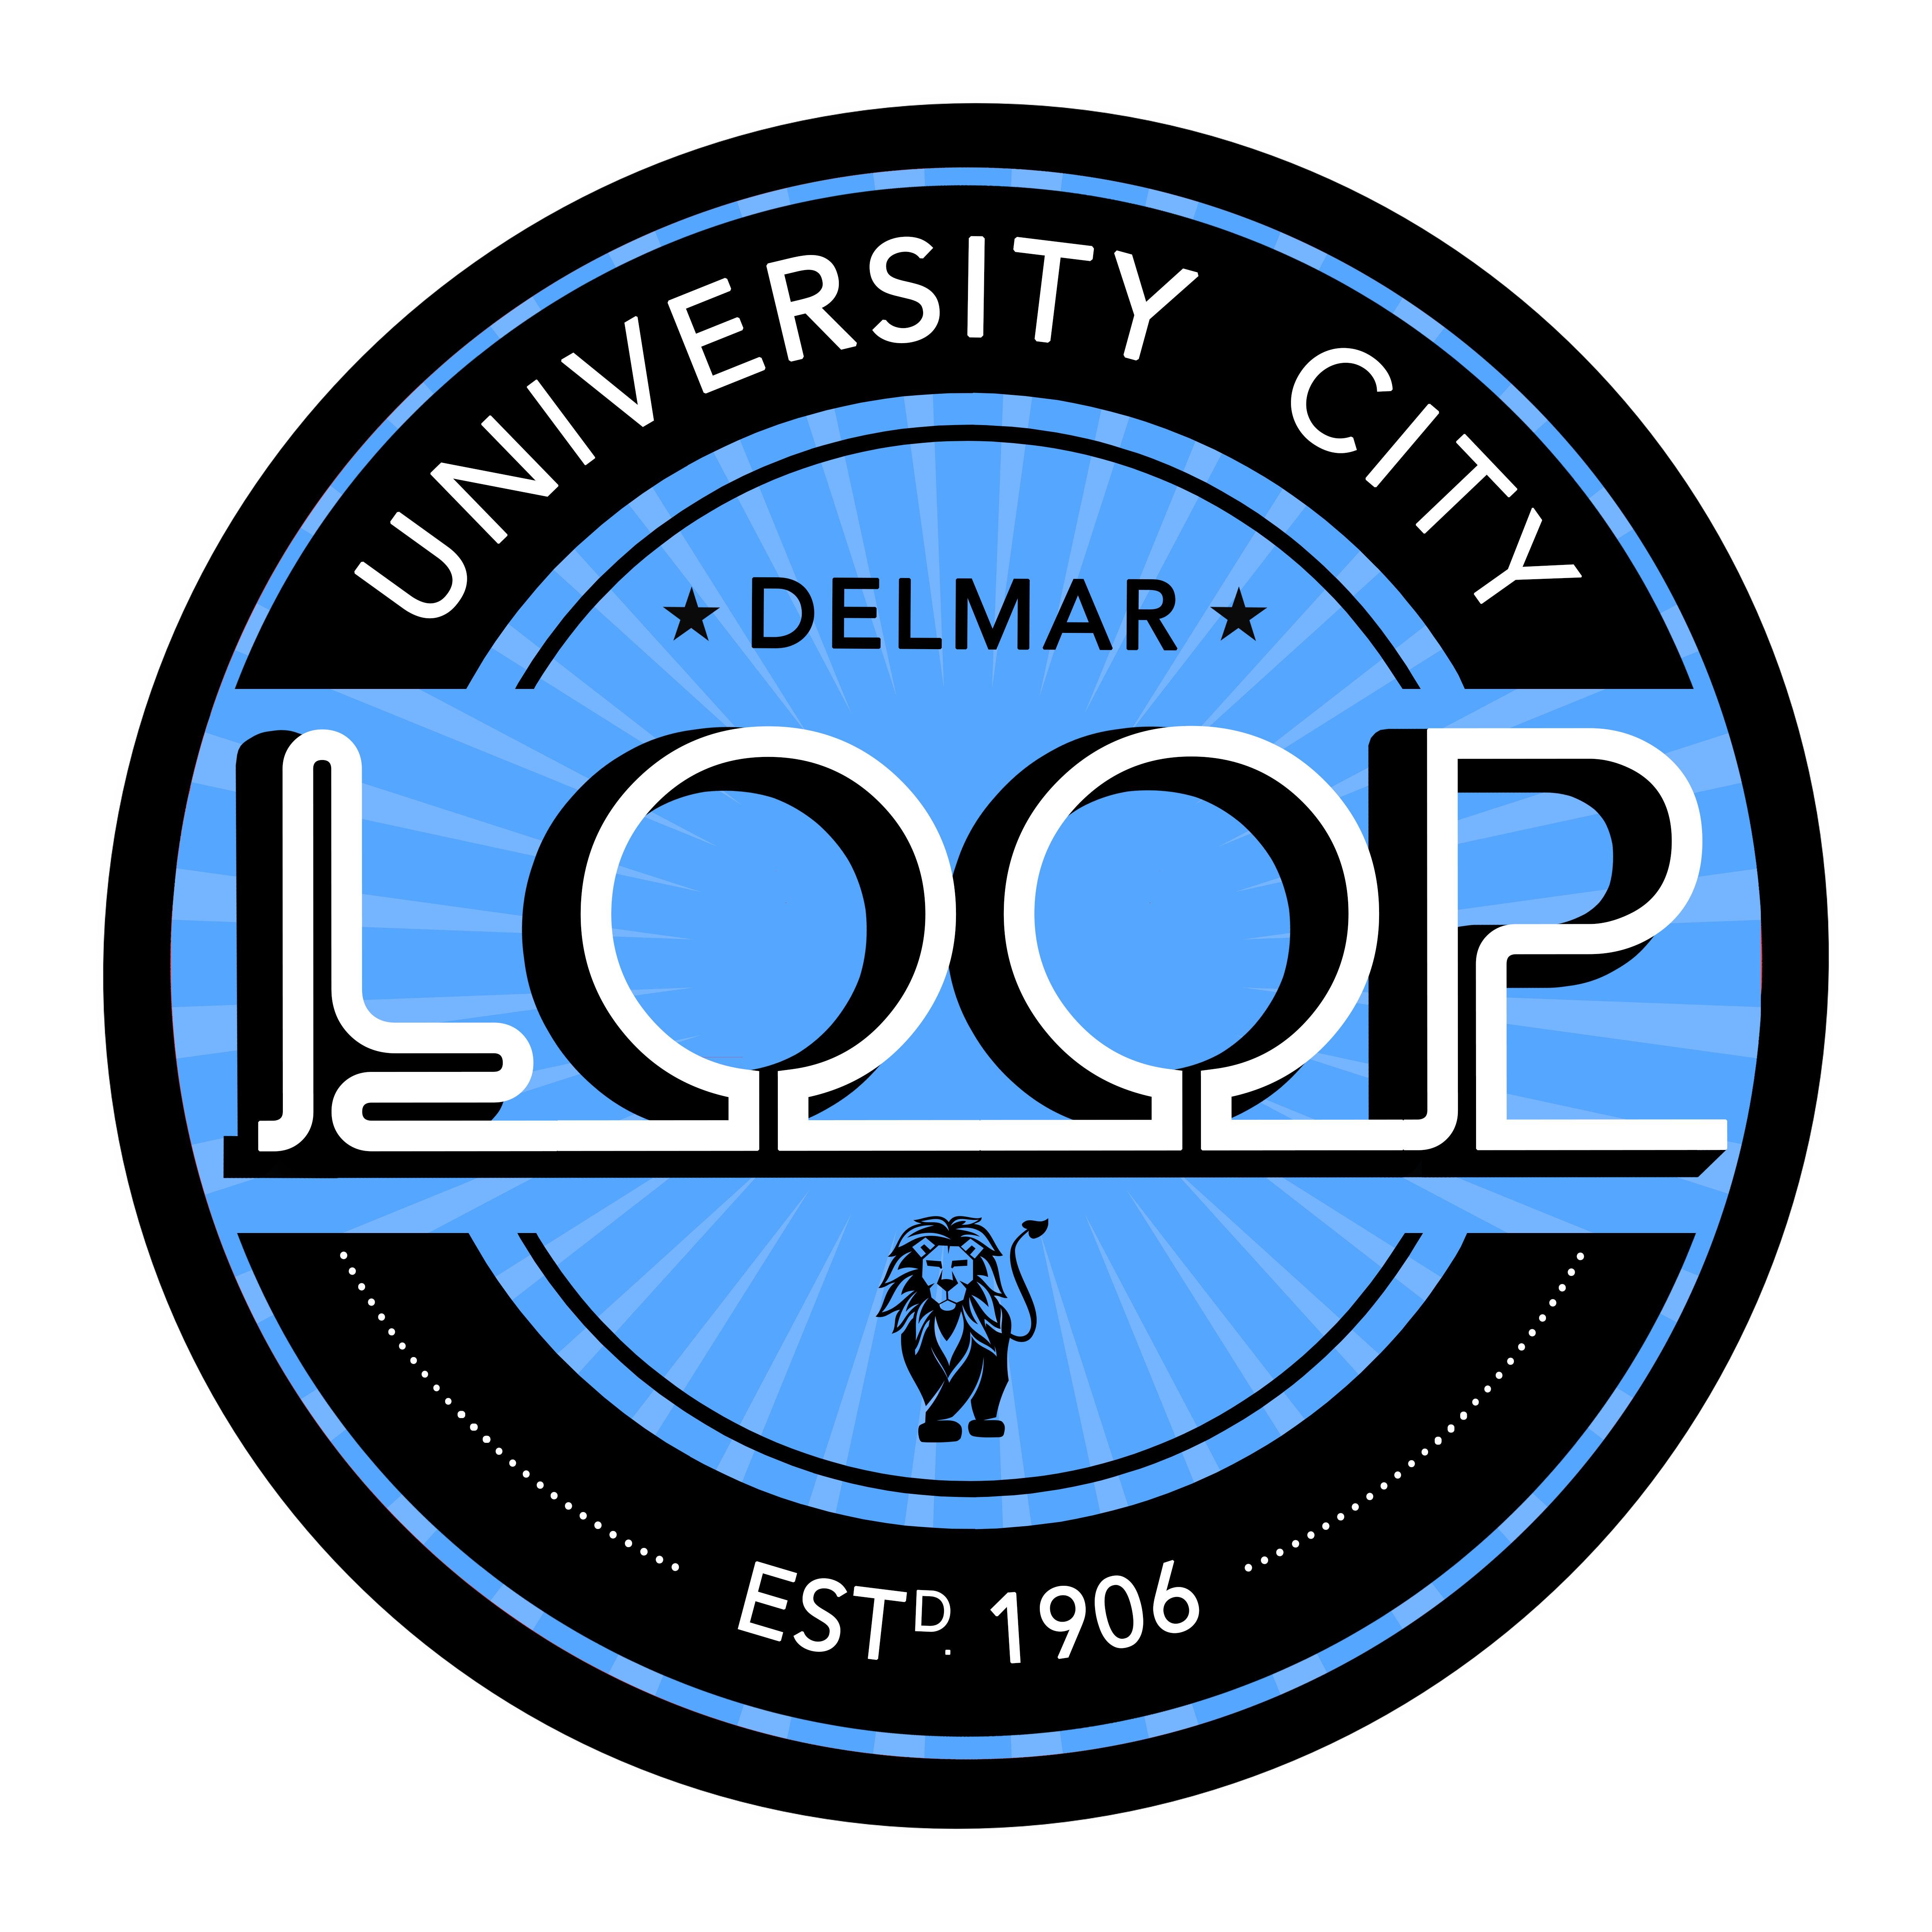 University City Loop - Delmar Loop